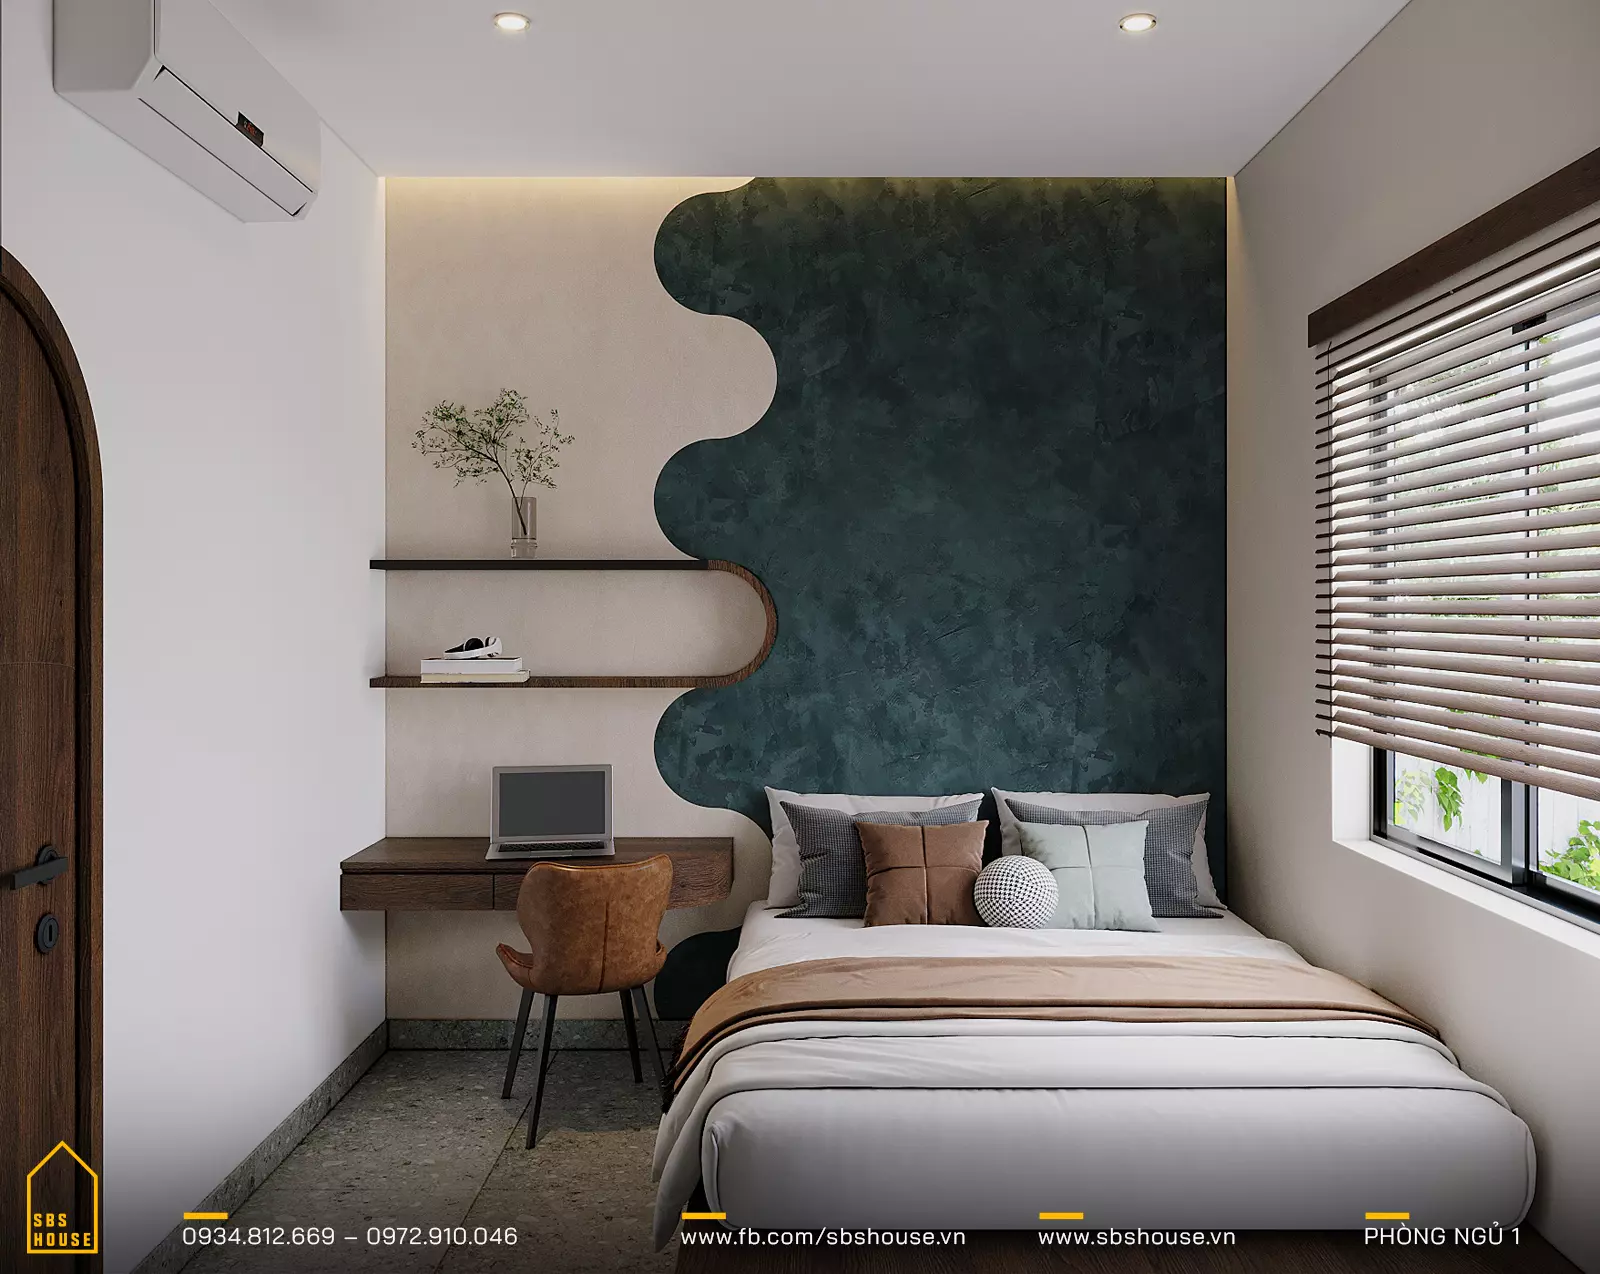 Hai phòng ngủ phụ dành cho các thành viên gia đình hoặc khách mời, được thiết kế thoải mái và ấm áp.